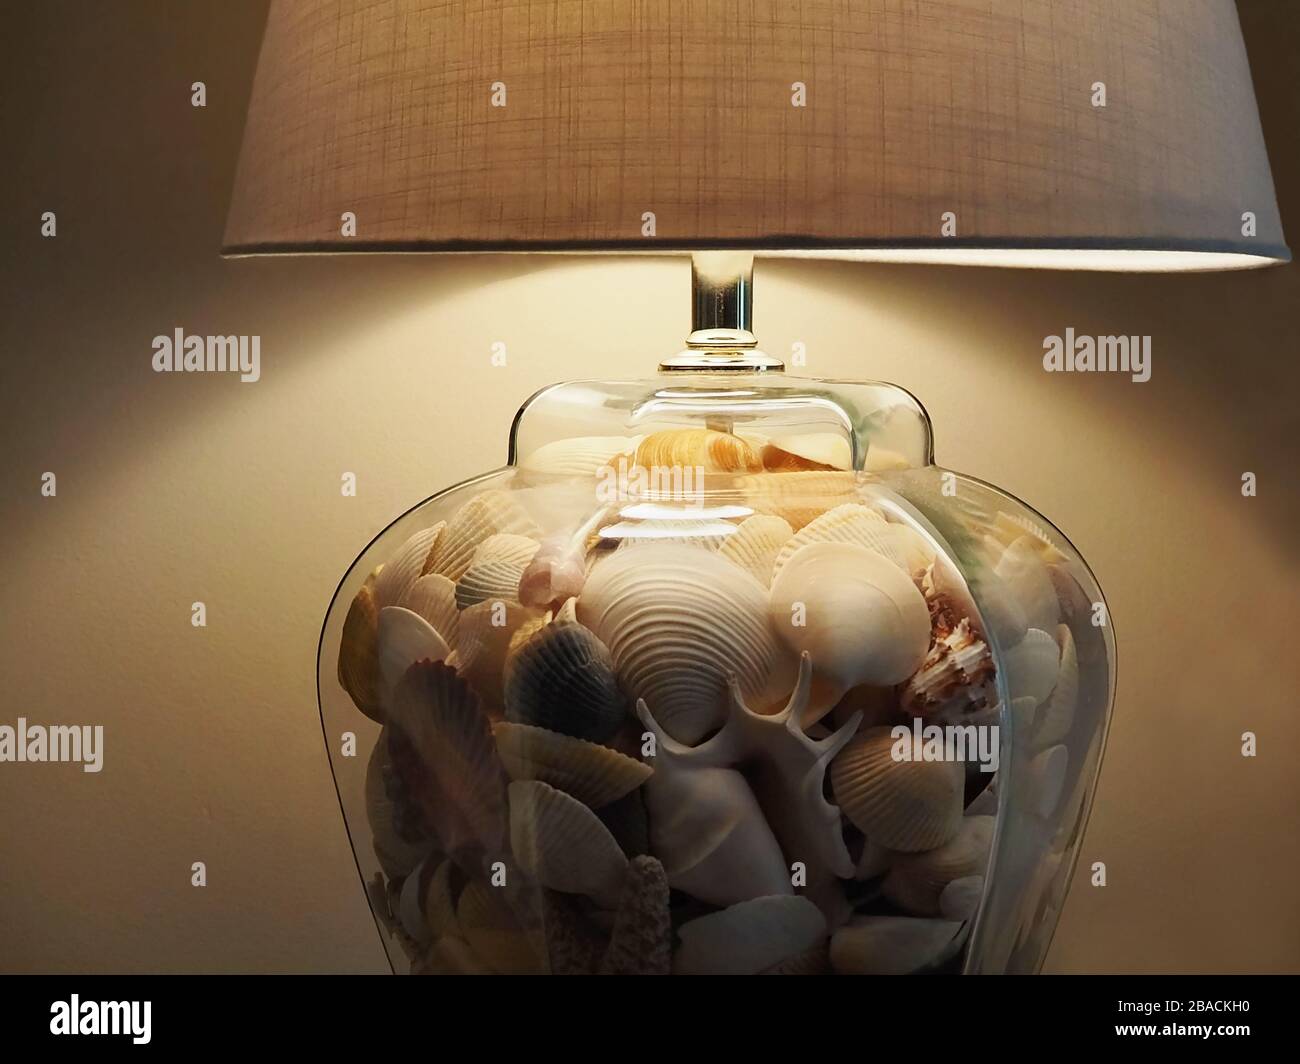 Gros plan sur une base de lampe de table en verre transparent remplie de coquillages, avec un abat-jour en lin beige. Banque D'Images